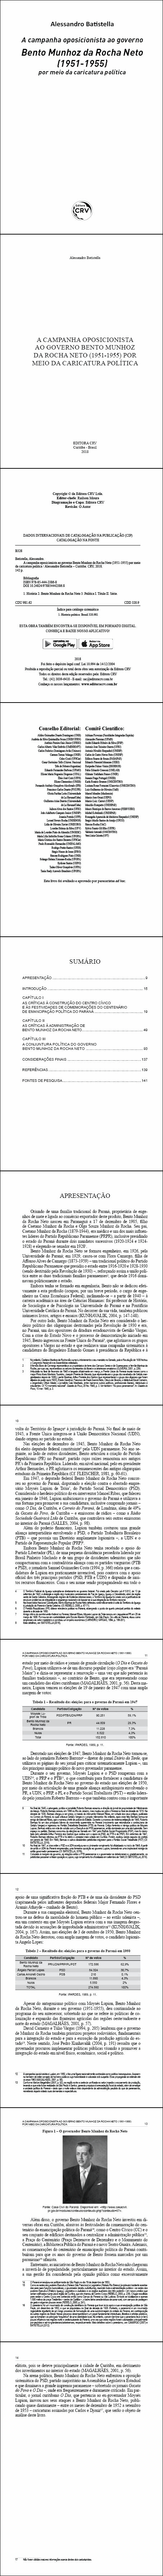 A CAMPANHA OPOSICIONISTA AO GOVERNO BENTO MUNHOZ DA ROCHA NETO (1951-1955) POR MEIO DA CARICATURA POLÍTICA